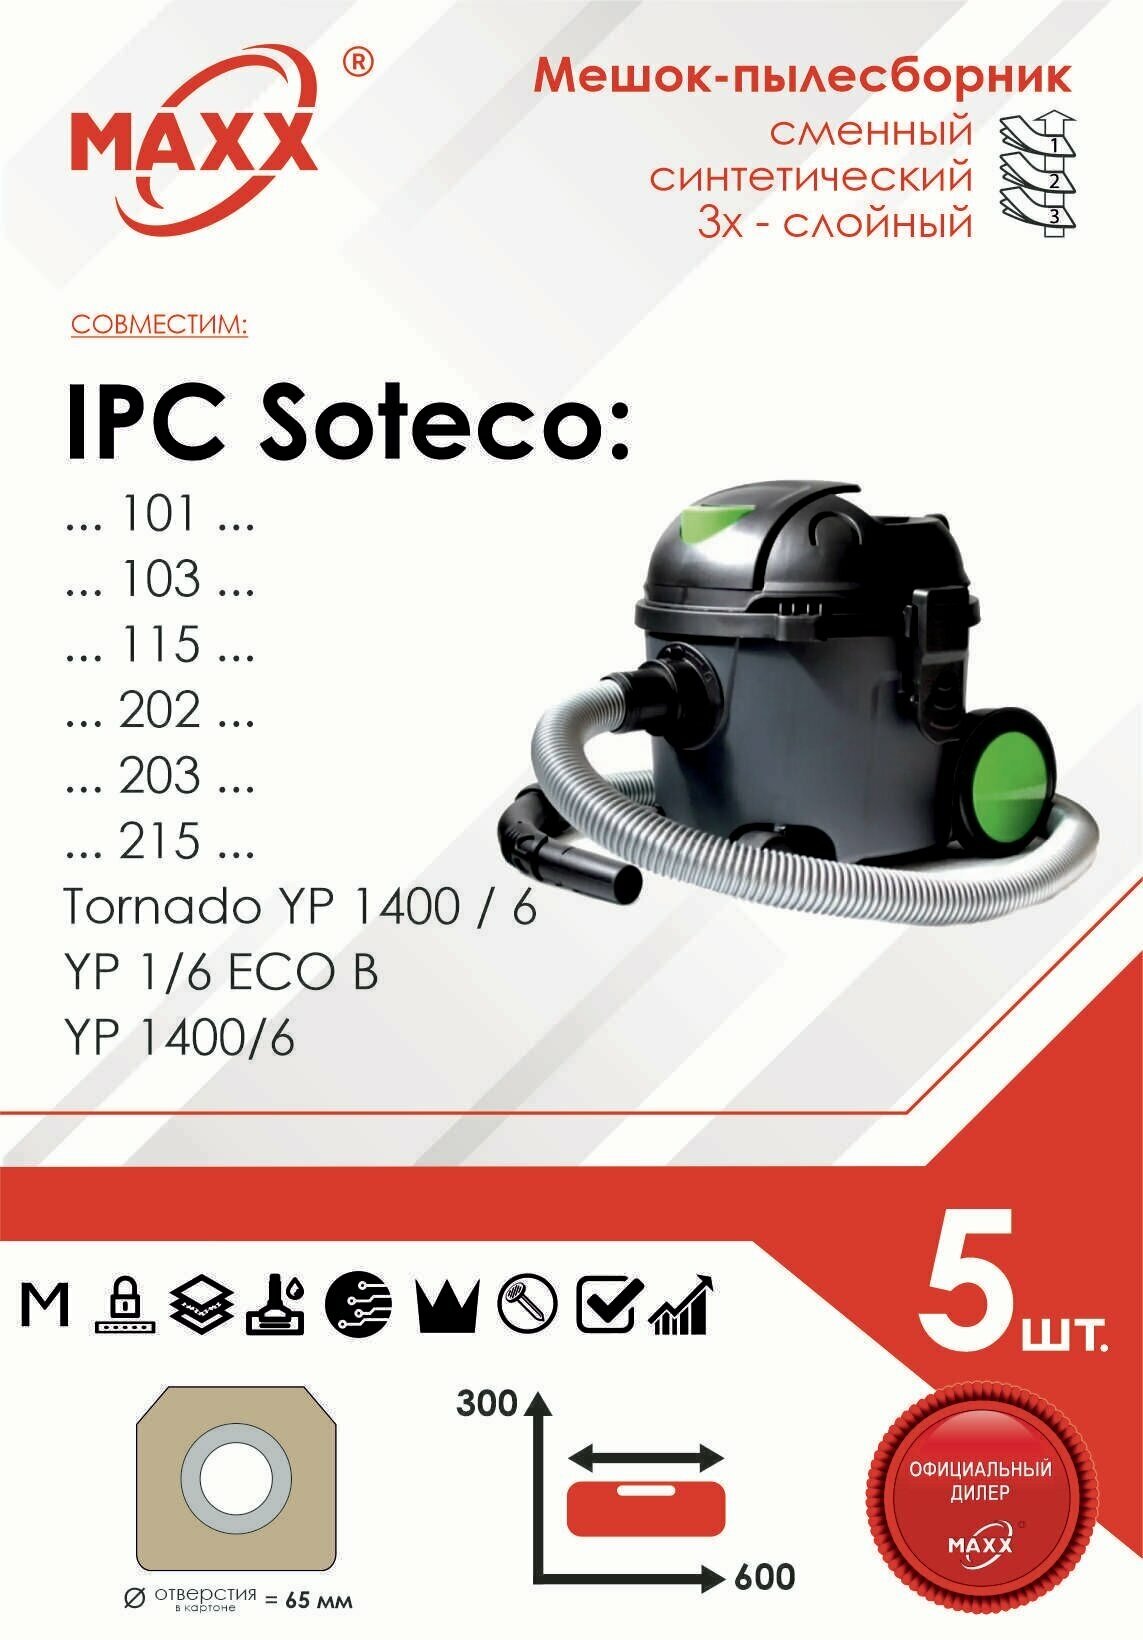 Мешок - пылесборник 5 шт. для пылесоса IPC Soteco 115, 200, 202, 203, 215, YP 1/6, YP1400/6